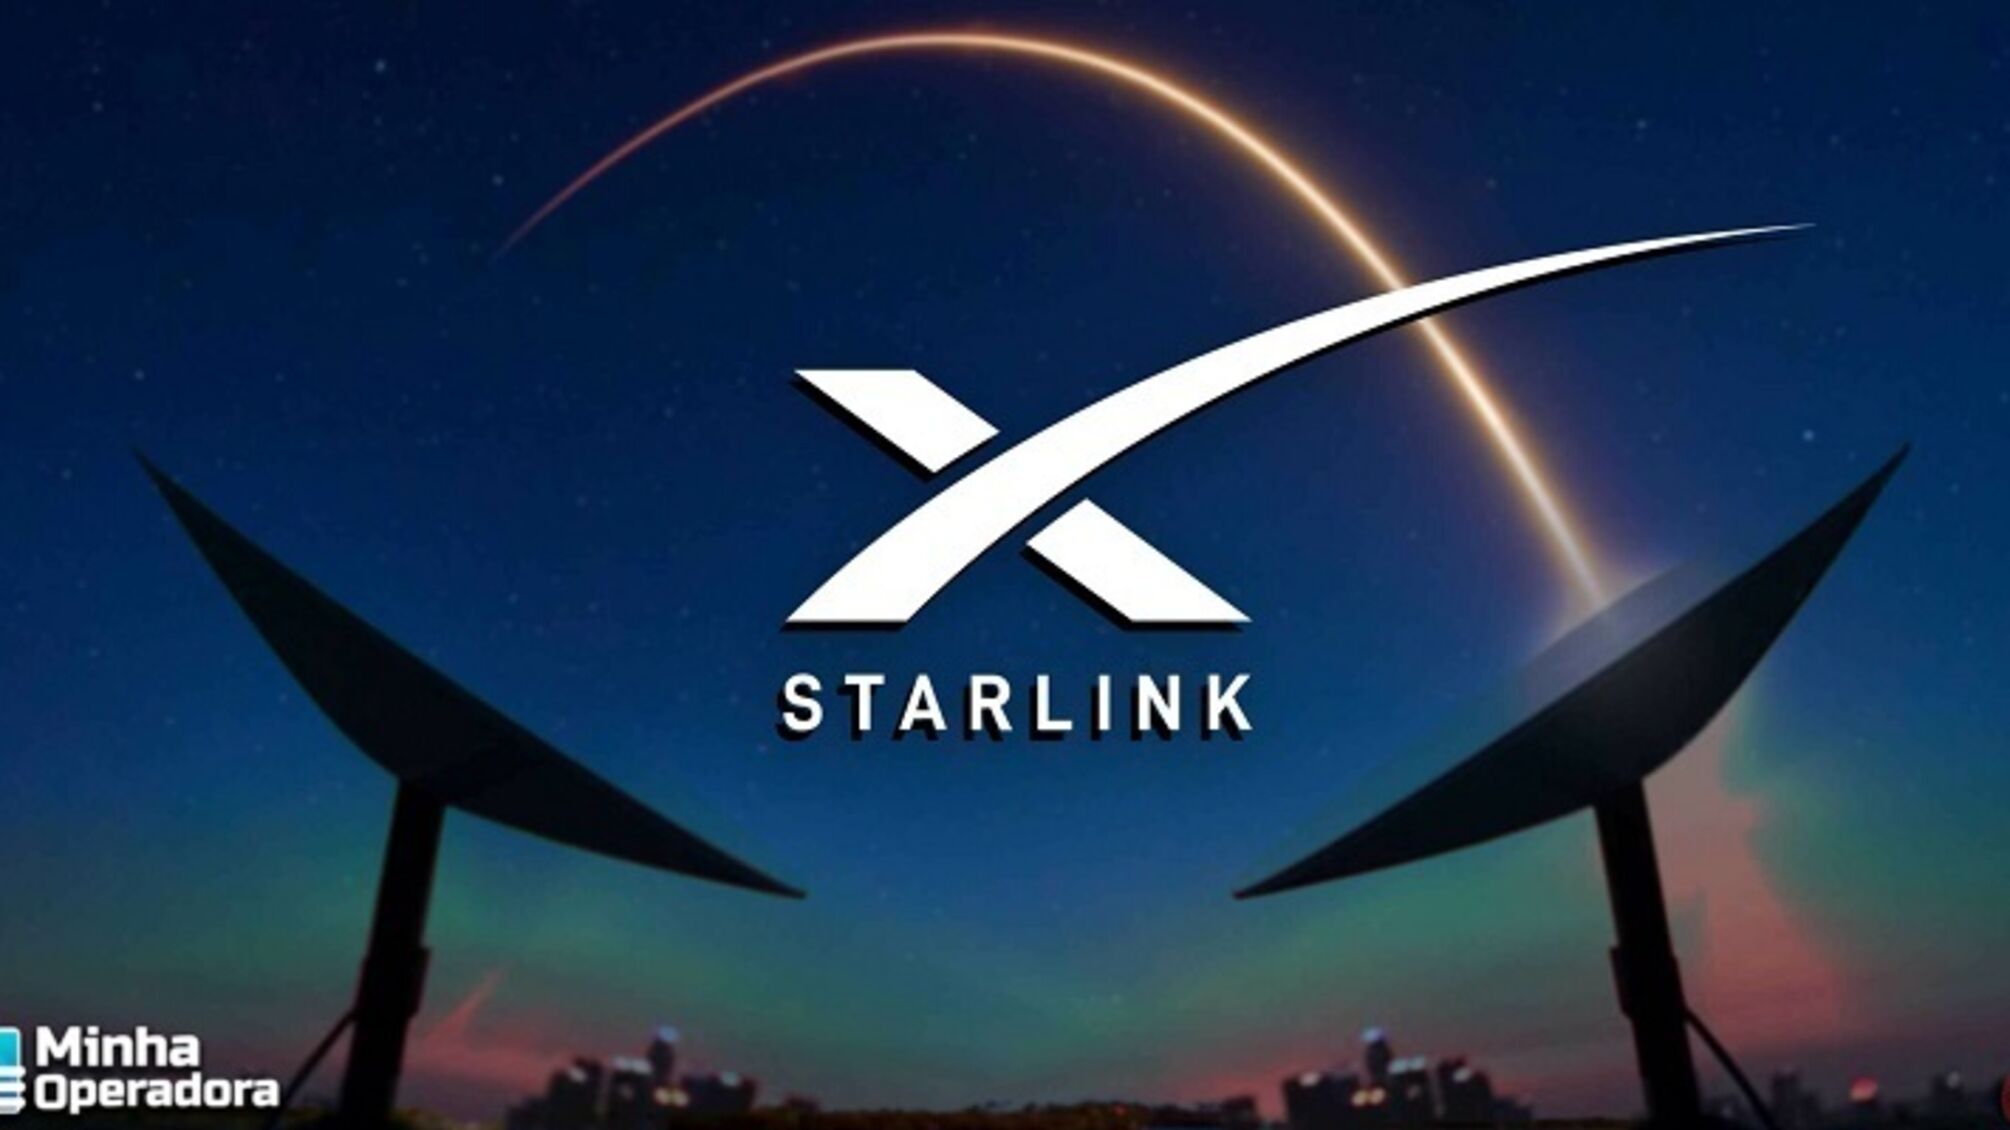 Из-за крупнейшей магнитной бури за последние 20 лет, спутники Starlink ухудшат свою связь